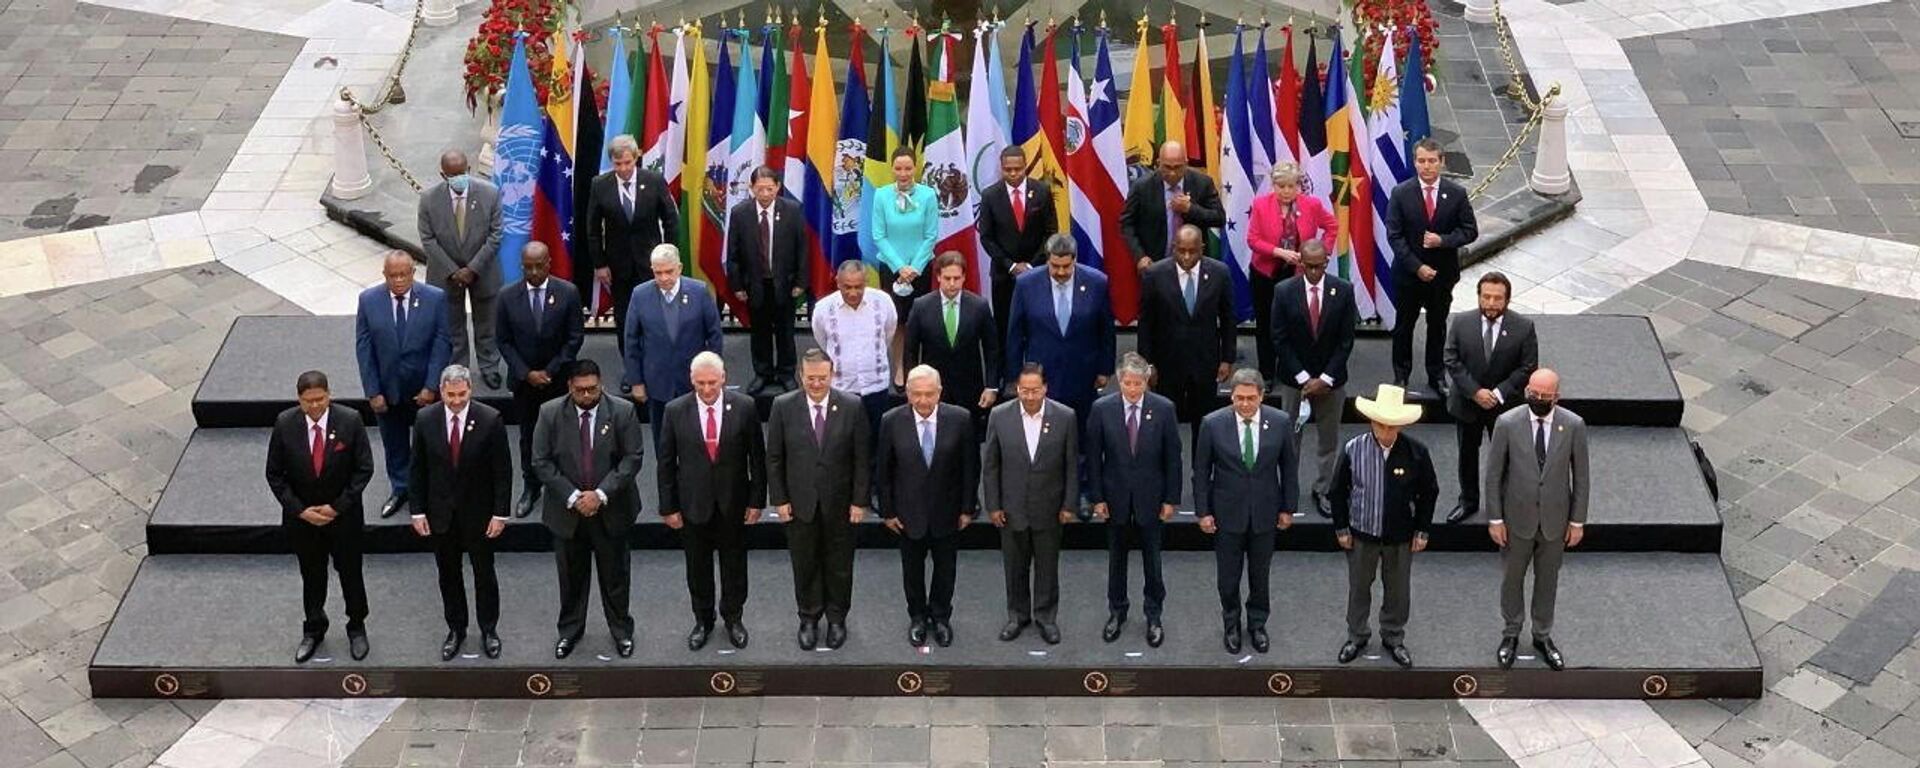 Foto de protocolo de los participantes en la Cumbre de la Comunidad de Estados Latinoamericanos y Caribeños (CELAC) en México, el 18 de septiembre del 2021 - Sputnik Mundo, 1920, 23.09.2021